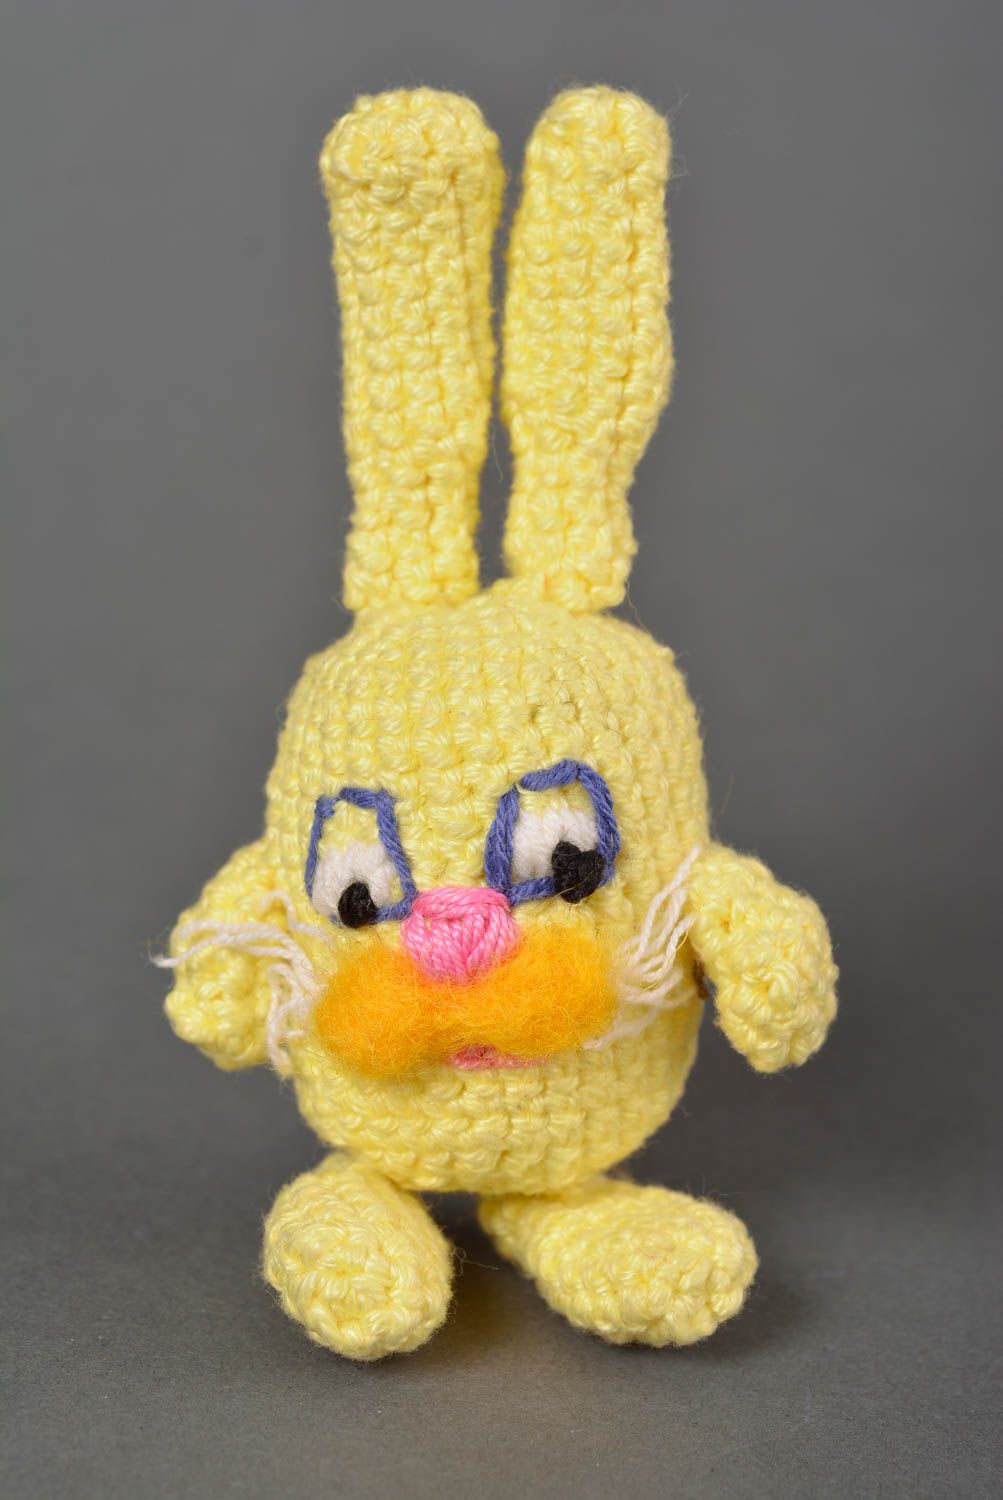 Peluche original hecho a mano juguete tejido al crochet regalo especial Conejo foto 1